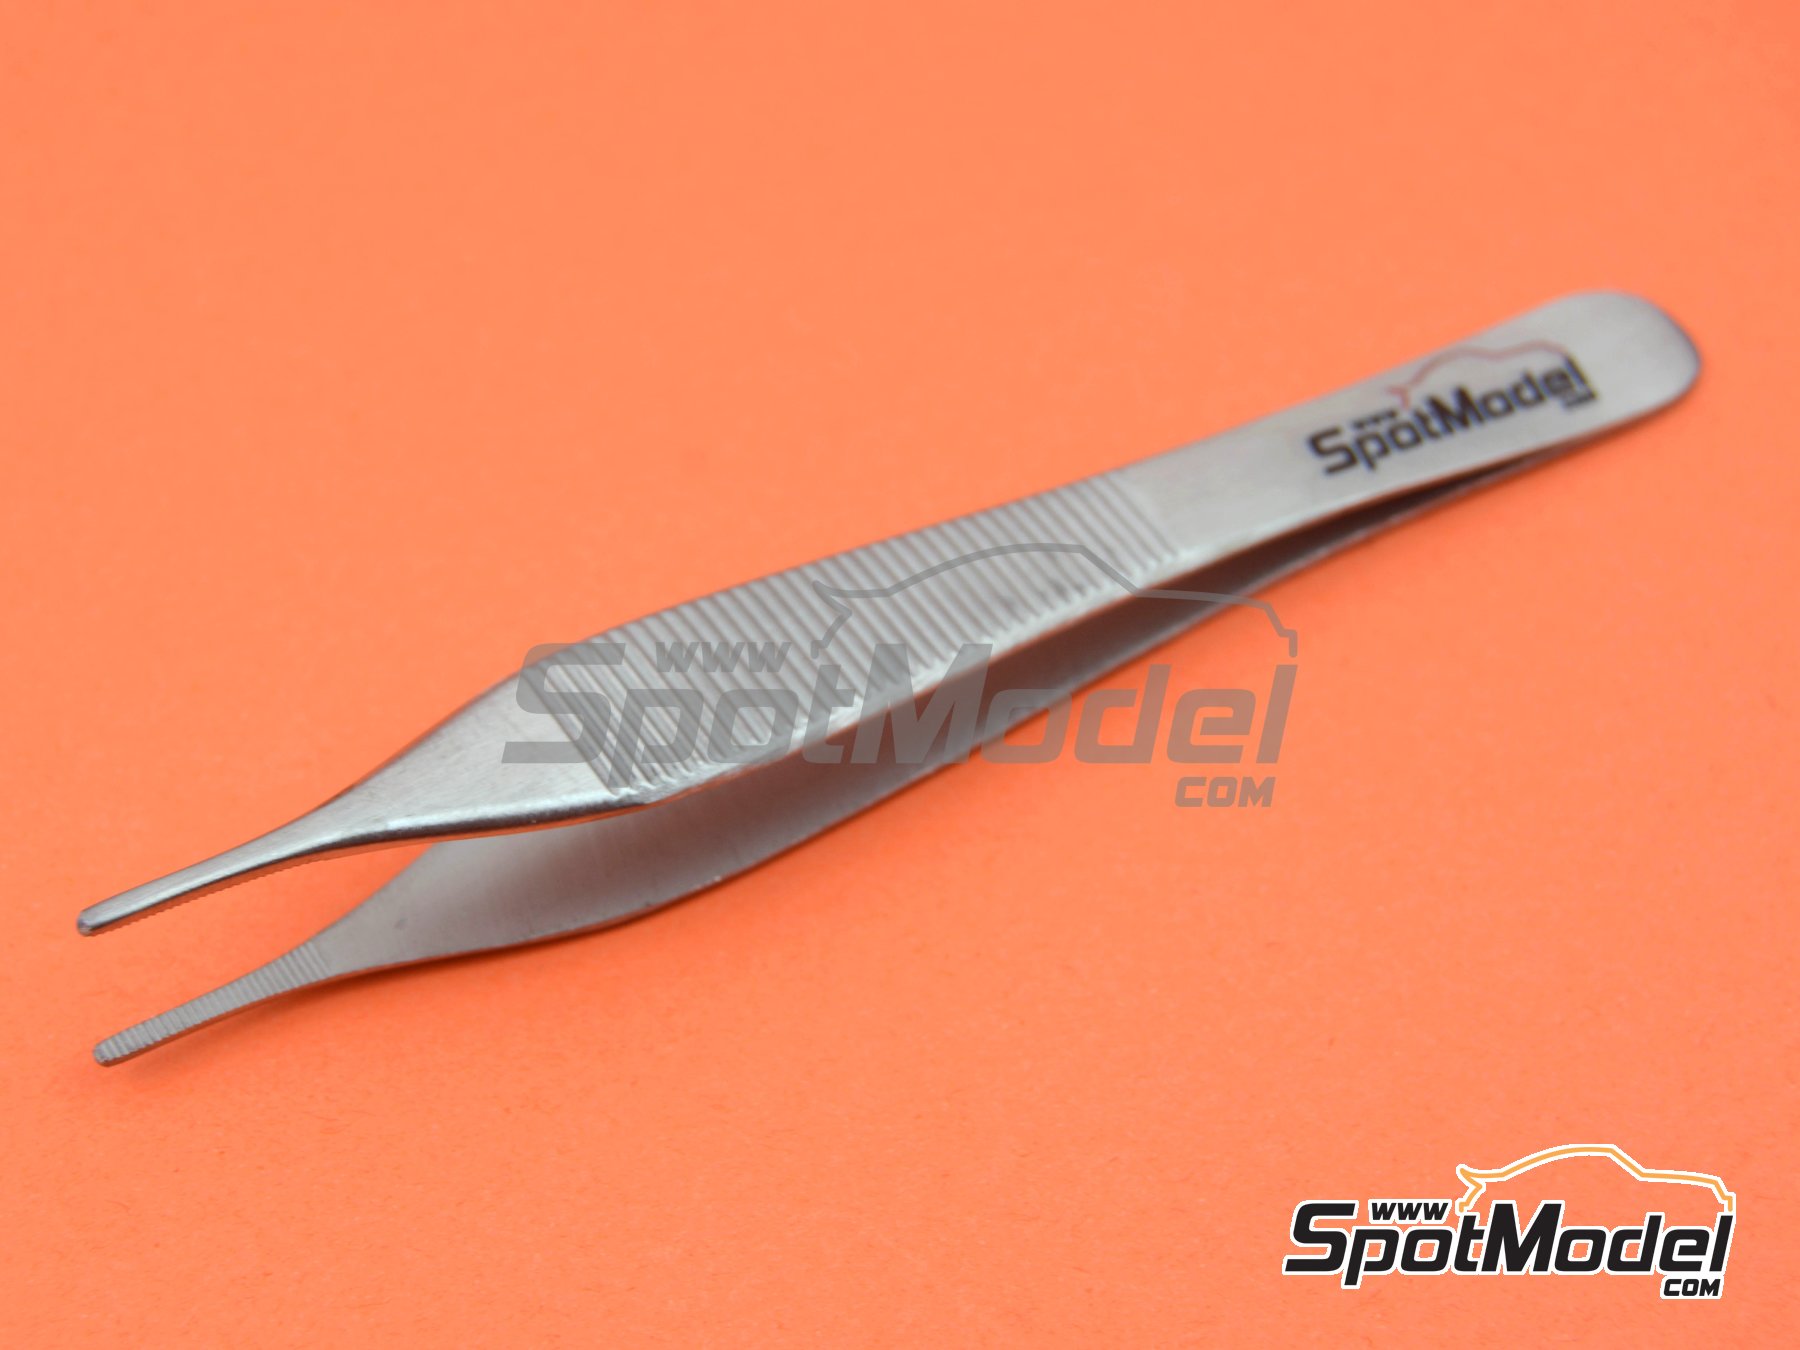 SpotModel SPOT-019: Herramienta de modelismo - Pinzas rectas (ref